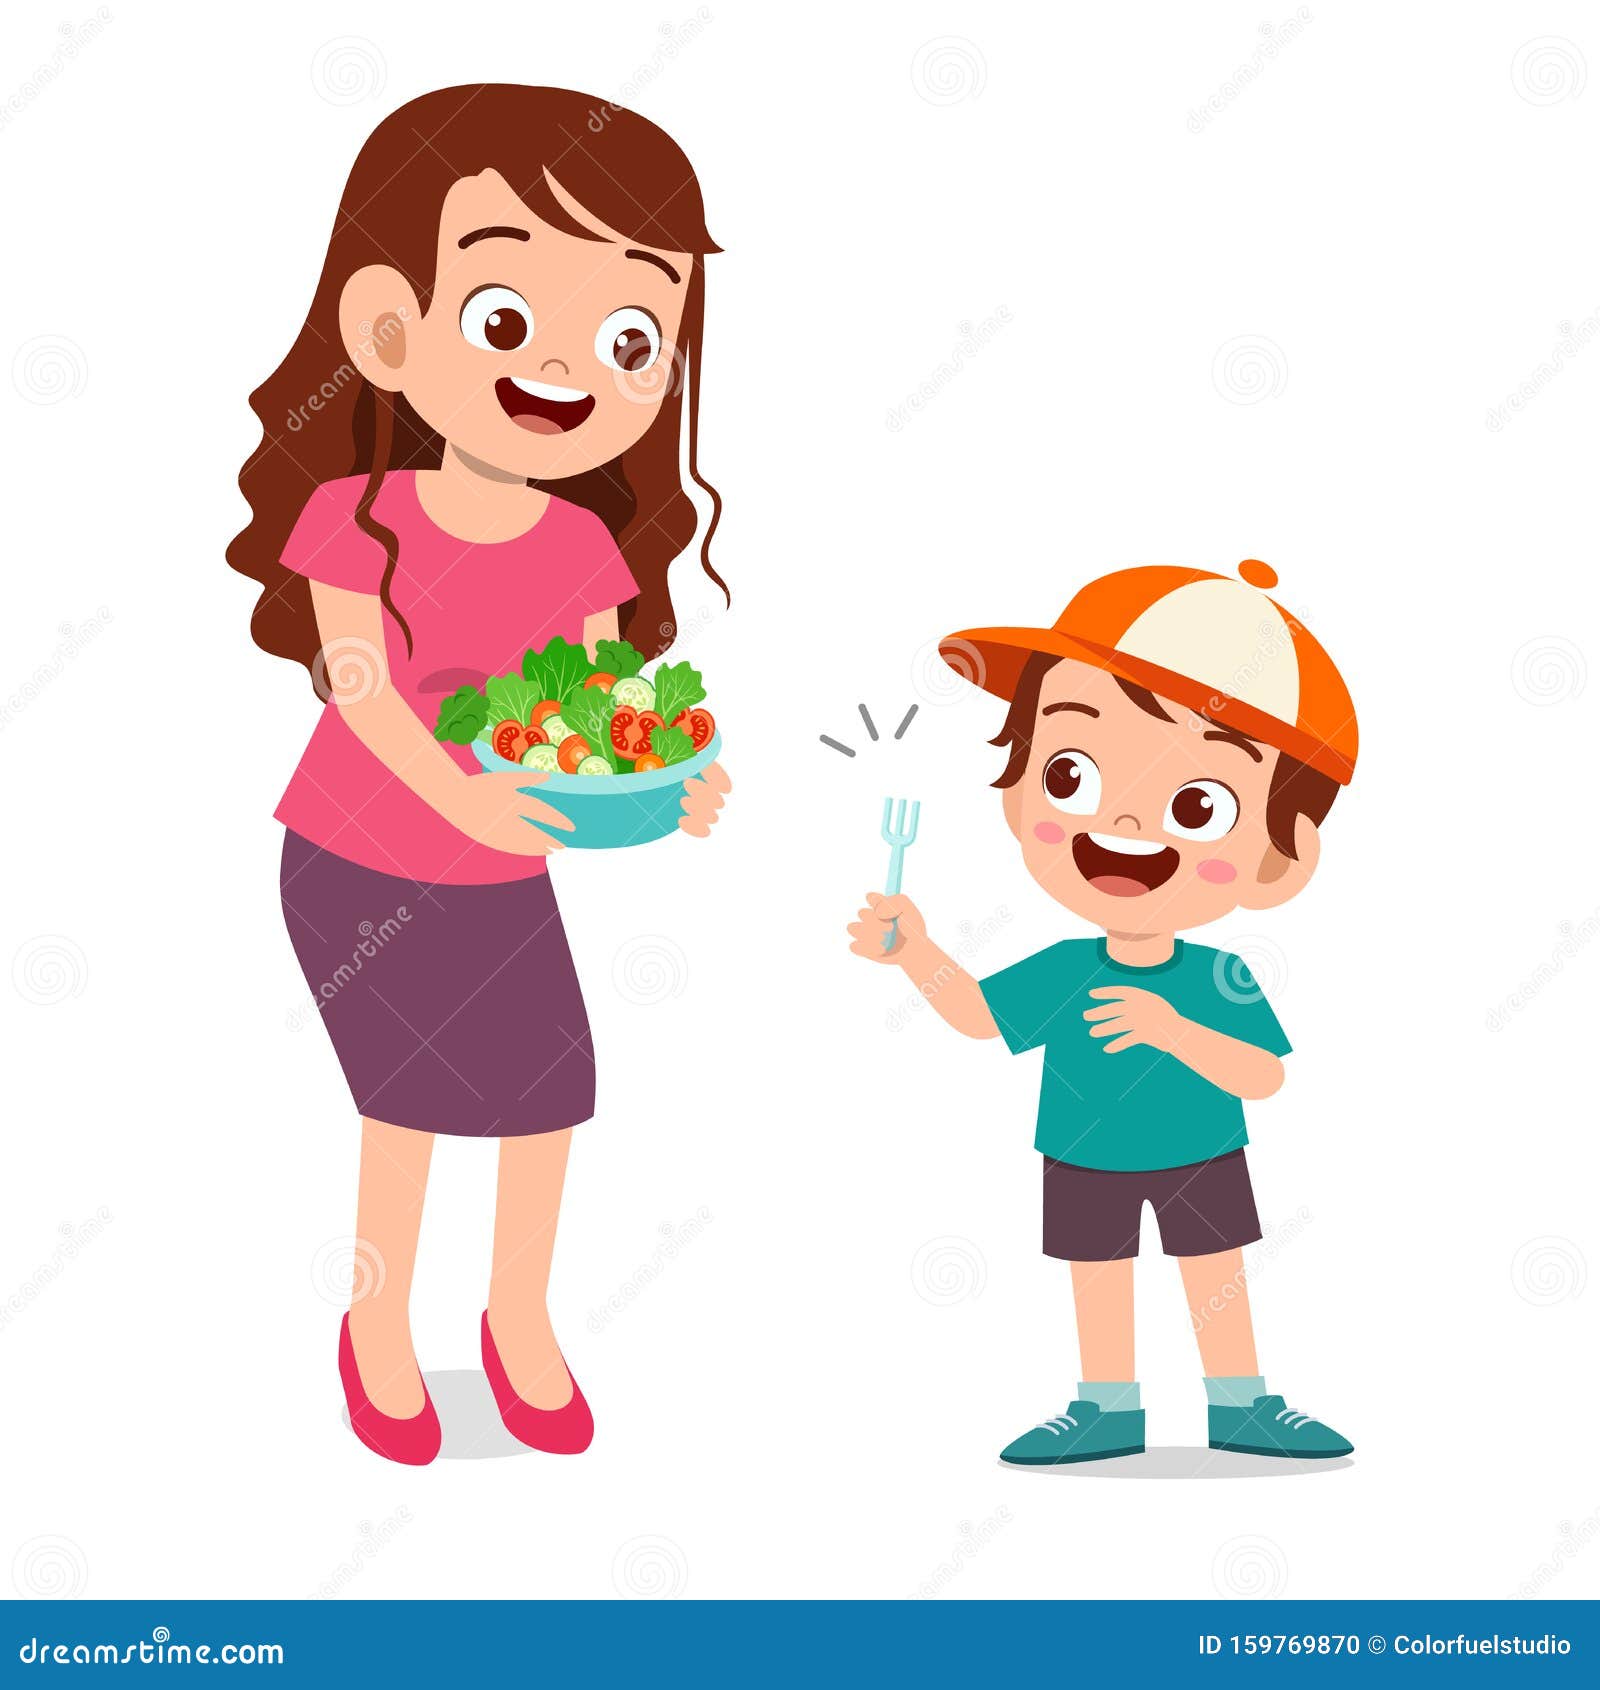 Cute Happy Kid Eat Salad Vegetable Fruits Stock Illustration ...